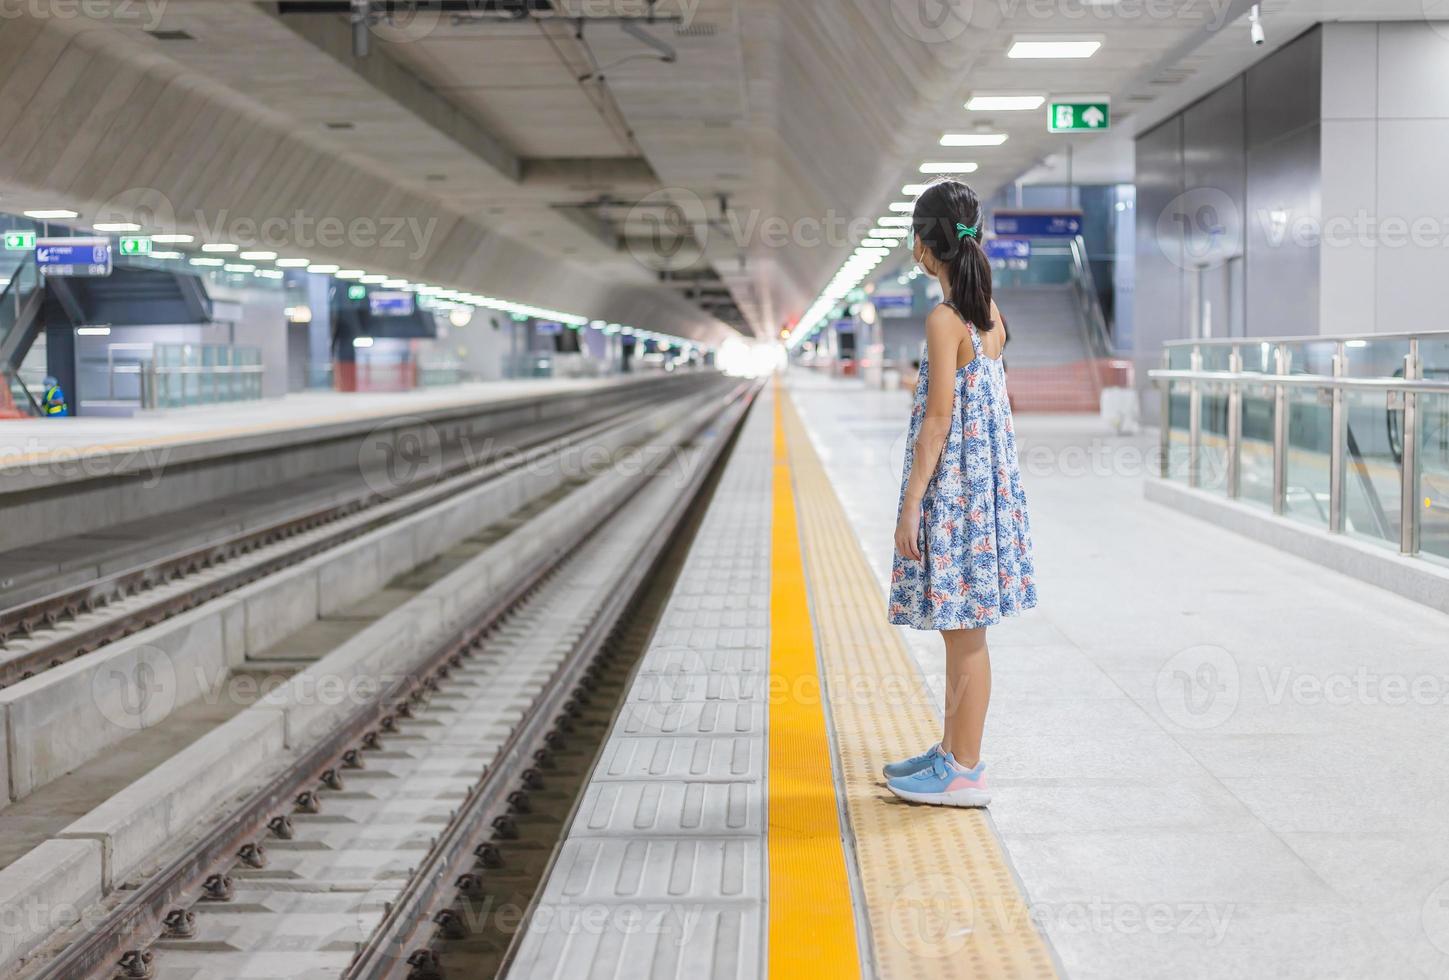 garota em uma estação ferroviária, esperando o trem, garoto esperando na plataforma do tubo, viajando de trem. foto